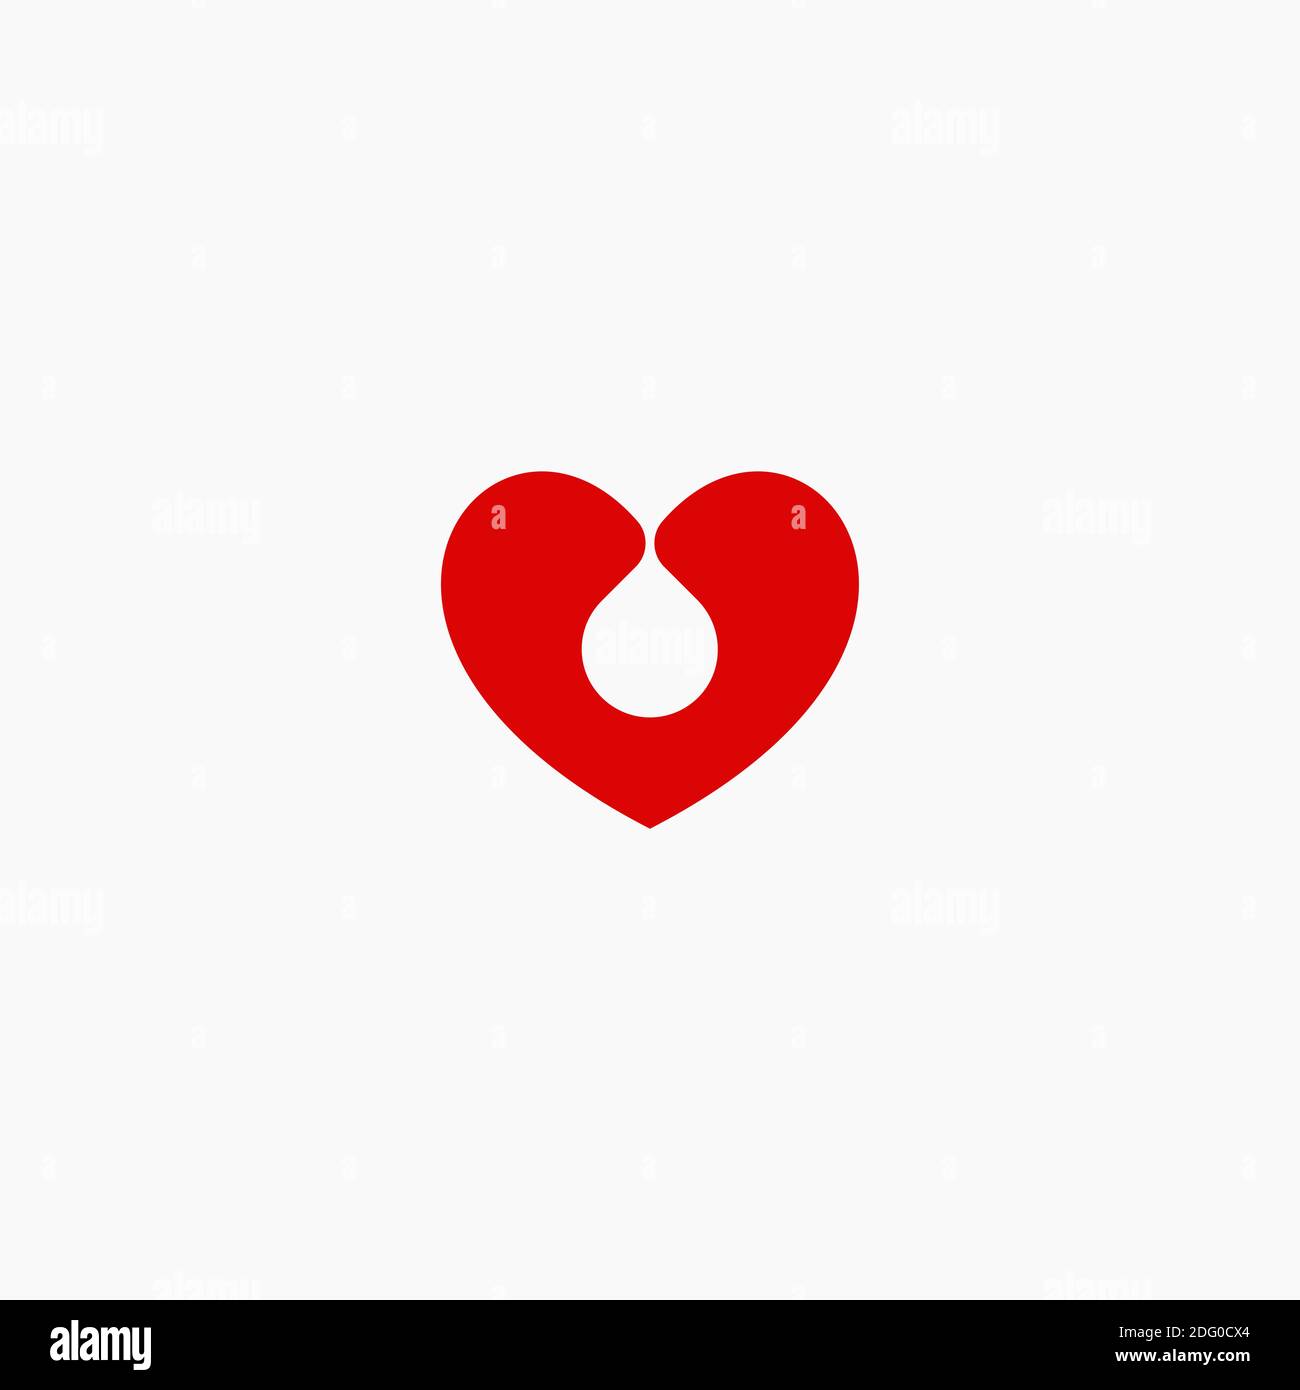 Concetto di logo vettoriale piatto per donazione di sangue. Icona della silhouette rossa isolata per trasfusione di sangue su sfondo bianco. Cuore e goccia simbolo di carità Illustrazione Vettoriale